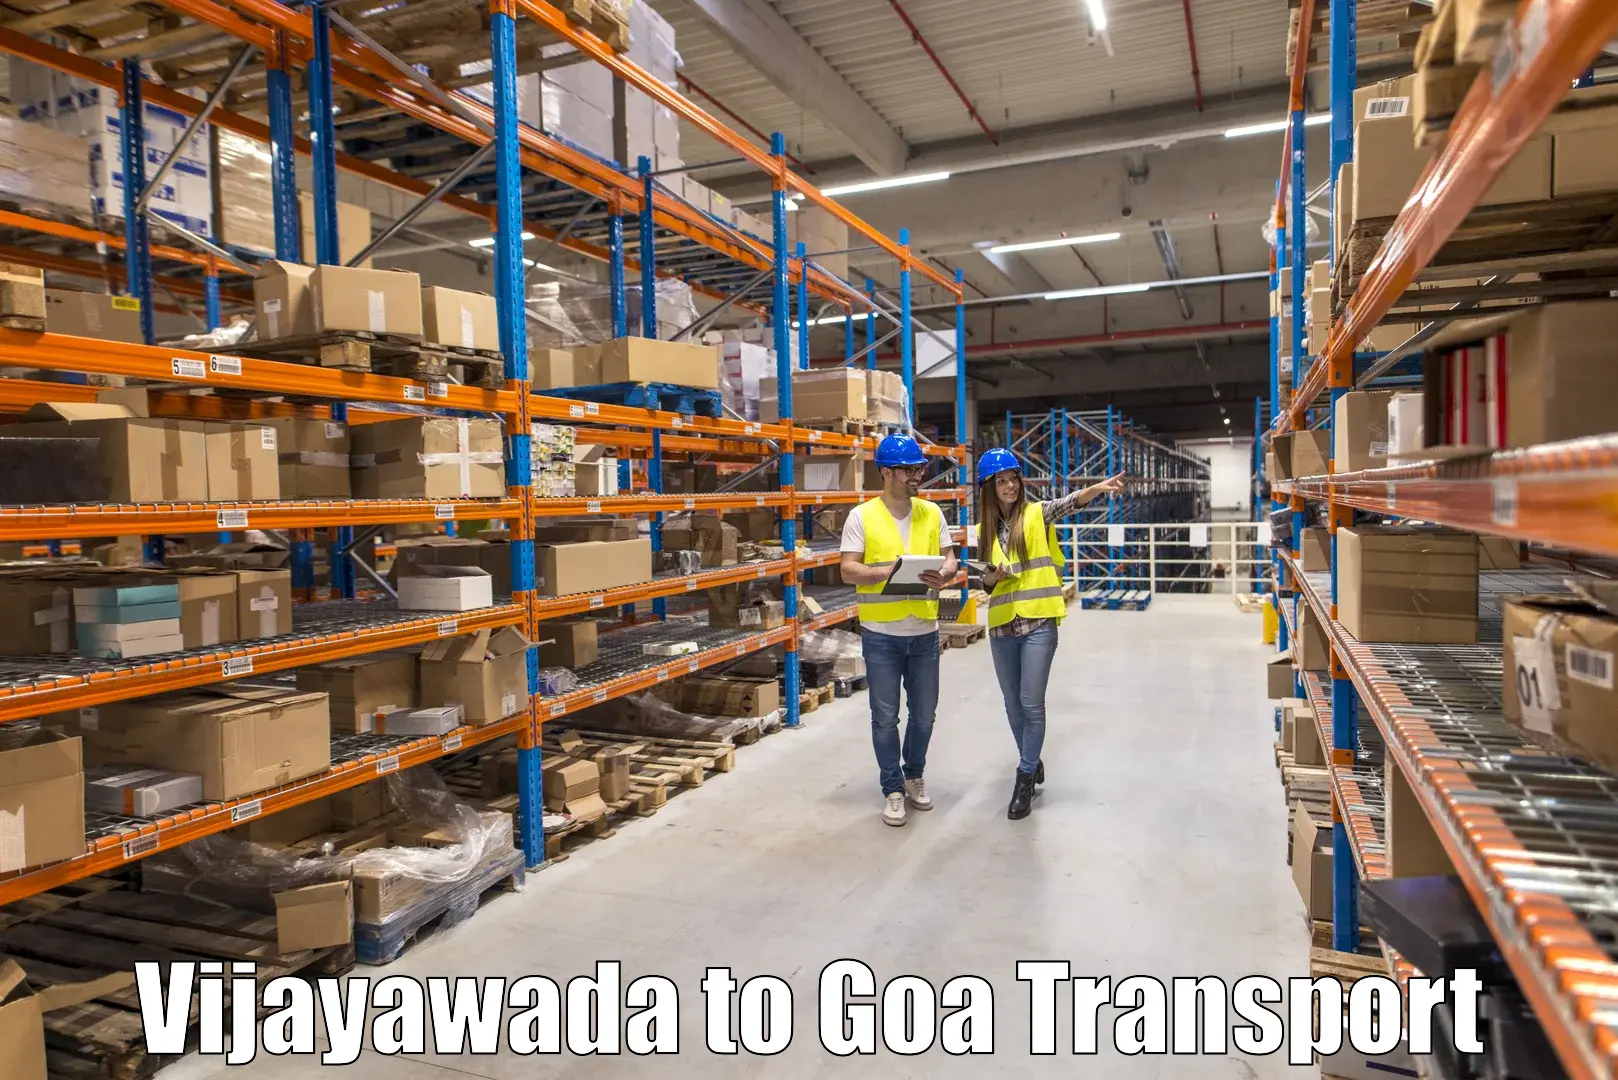 Express transport services Vijayawada to NIT Goa